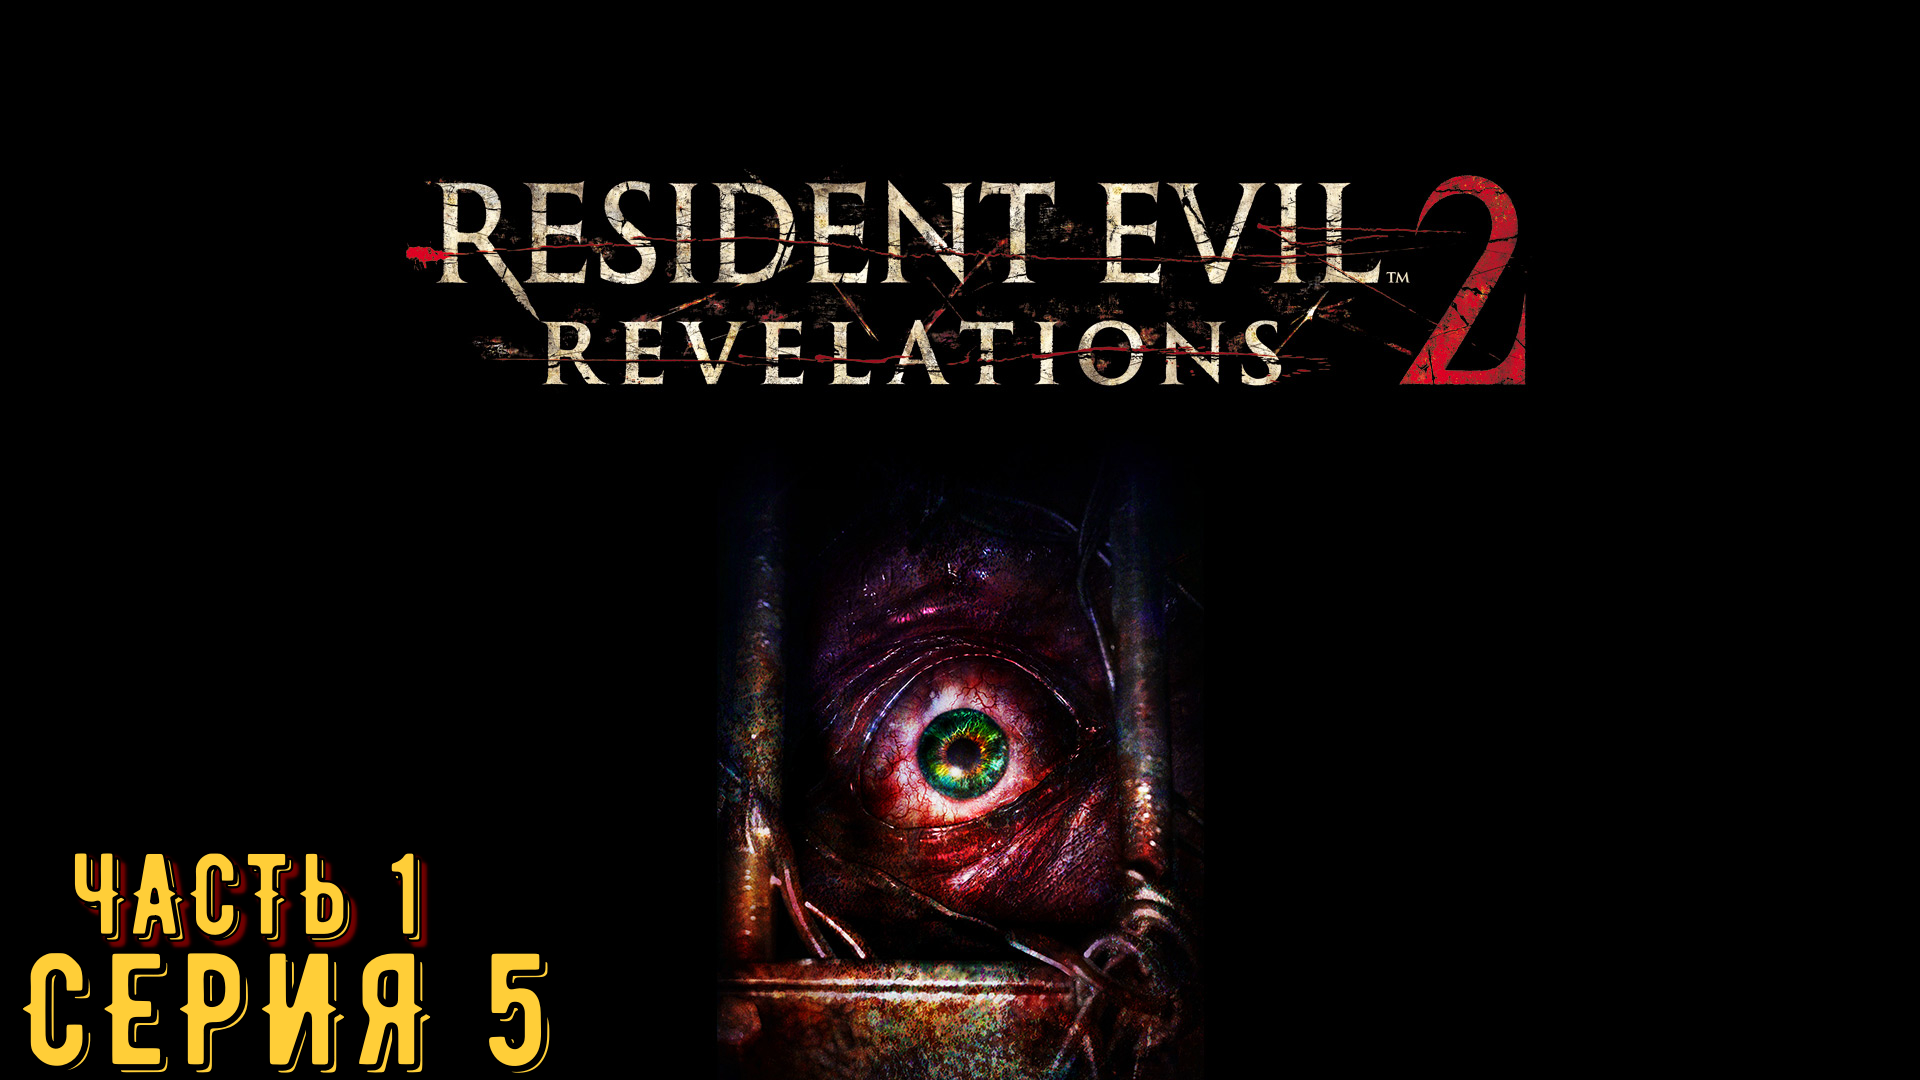 Resident Evil Revelations 2 / Biohazard Revelations 2 ► Серия 5 Часть 1 ◄ | Запись стрима